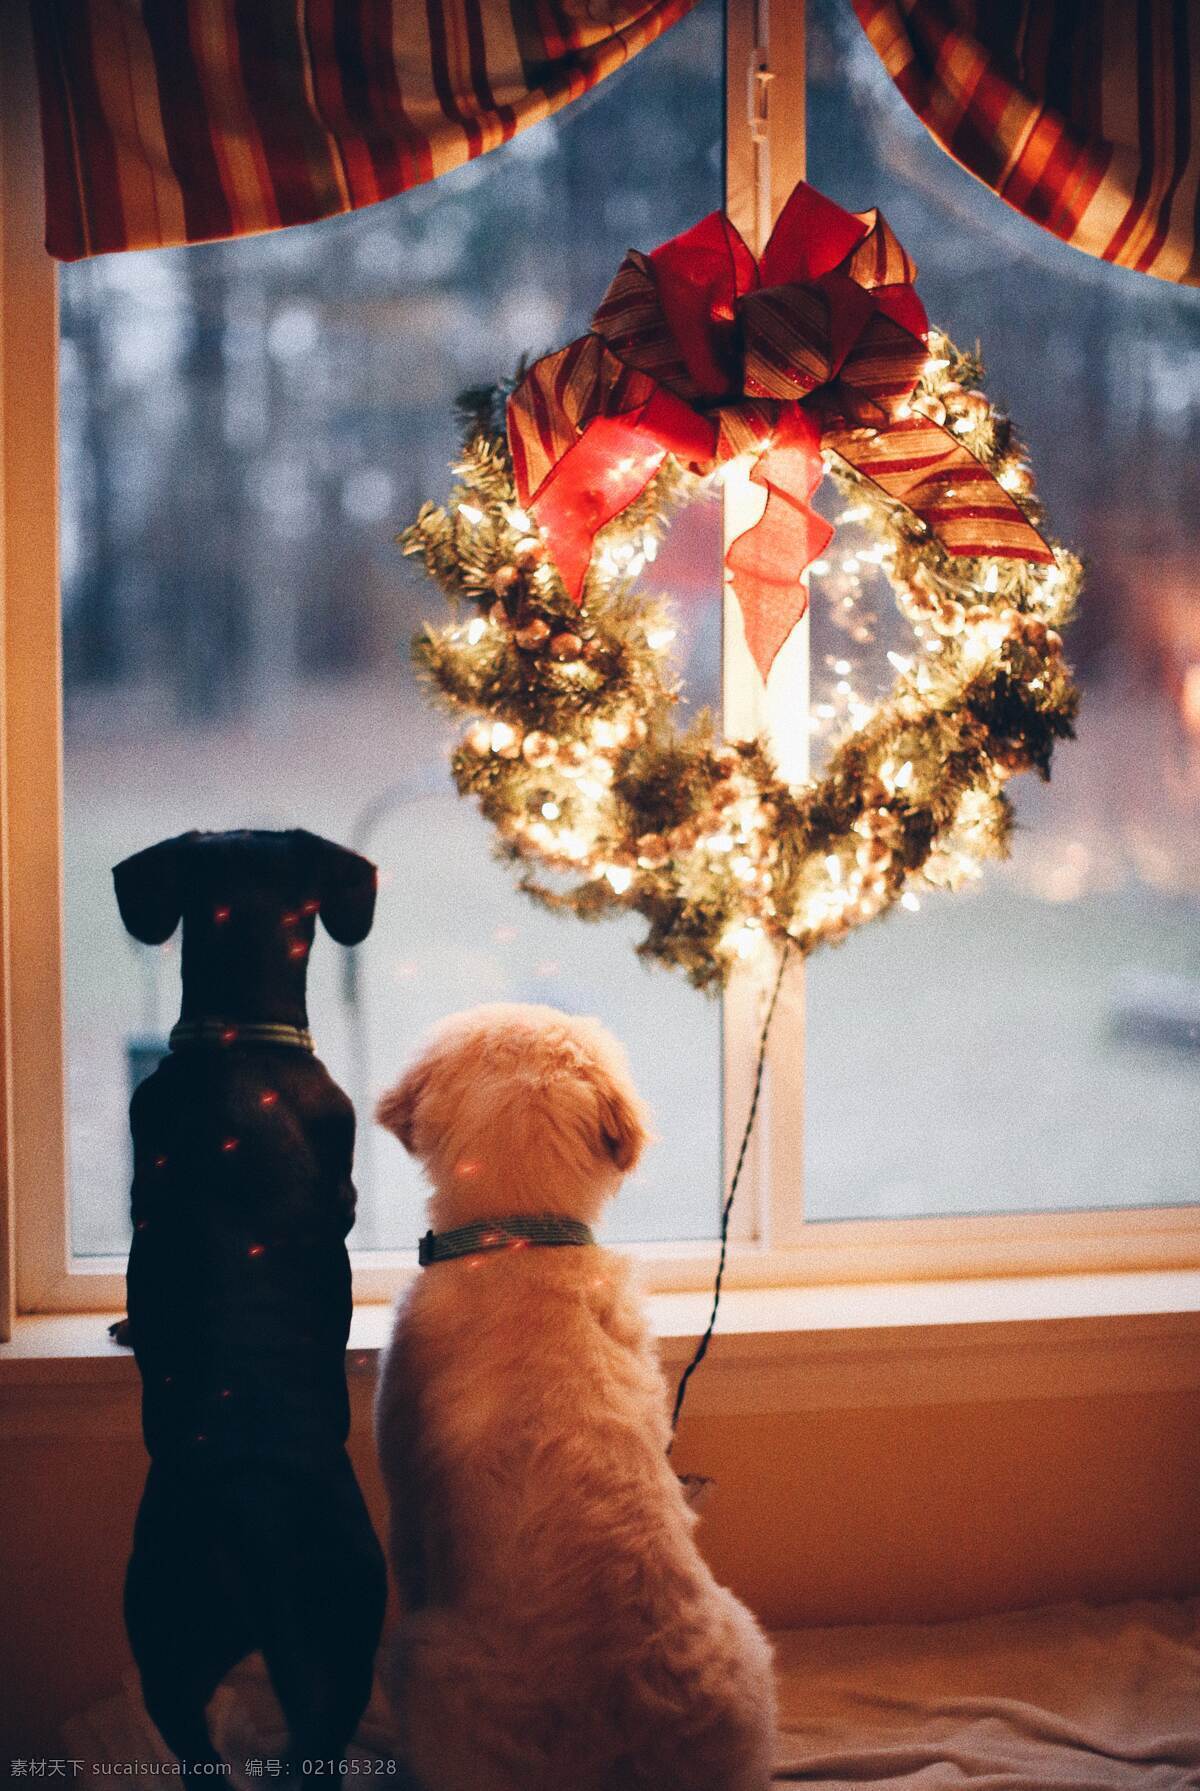 圣诞节图片 圣诞节 圣诞节装饰 圣诞节元素 圣诞花环 狗狗与圣诞节 彩灯 冬天的节日 自然景观 人文景观